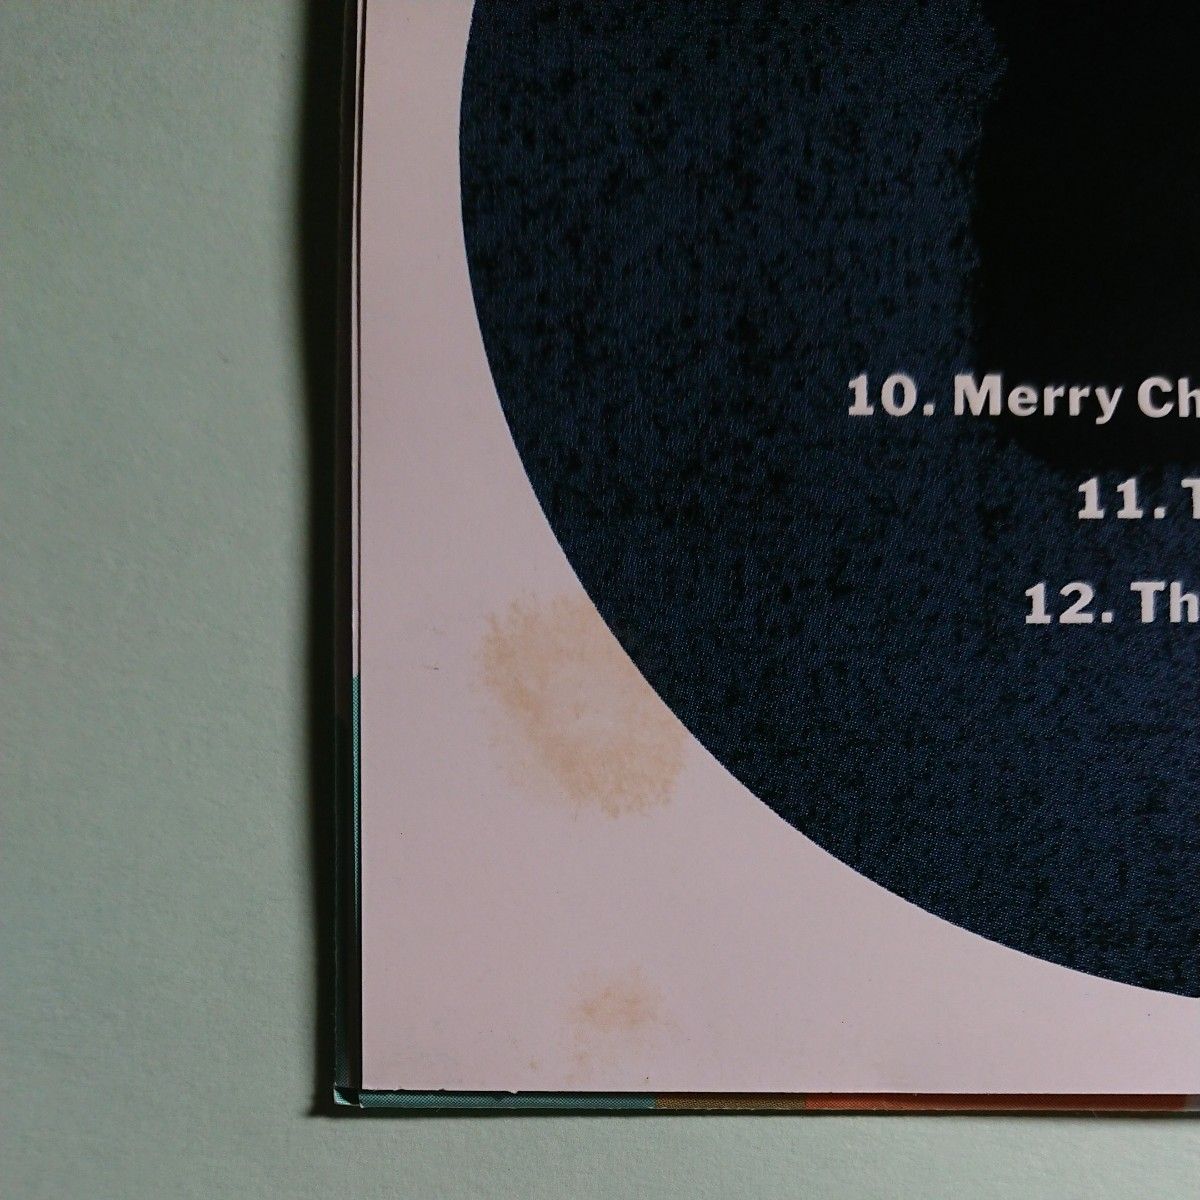 坂本龍一 グルッポ・ムジカーレ ベストアルバム CD 32MD-1046 ラスト・エンペラー 戦場のメリークリスマス 千のナイフ